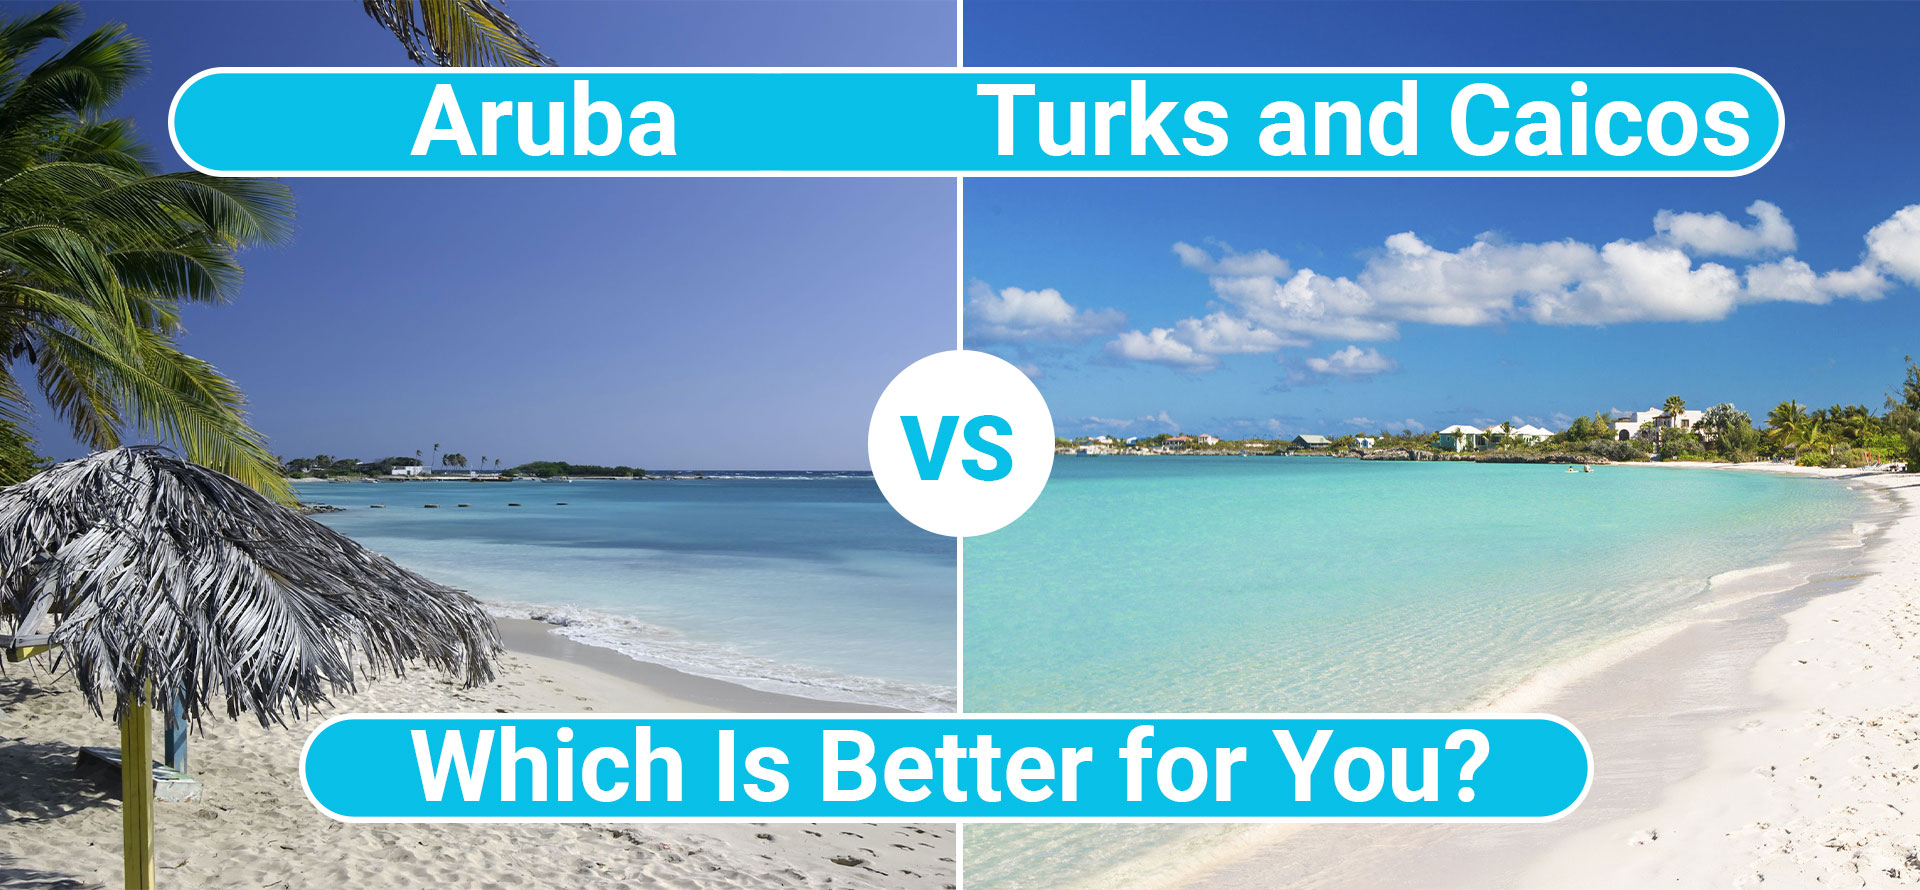 Aruba vs turks and caicos.